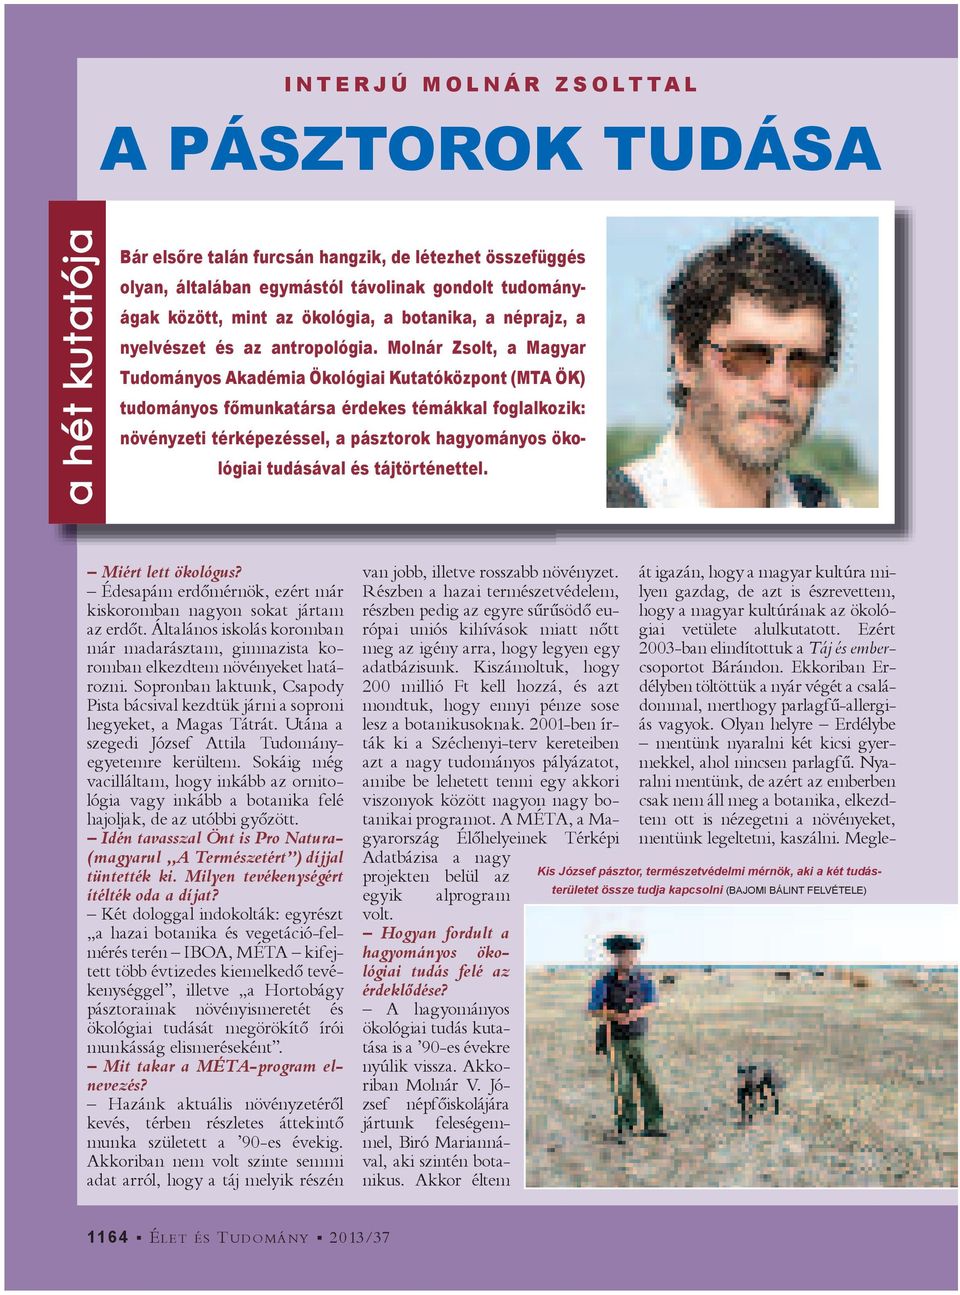 Molnár Zsolt, a Magyar Tudományos Akadémia Ökológiai Kutatóközpont (MTA ÖK) tudományos f munkatársa érdekes témákkal foglalkozik: növényzeti térképezéssel, a pásztorok hagyományos ökológiai tudásával